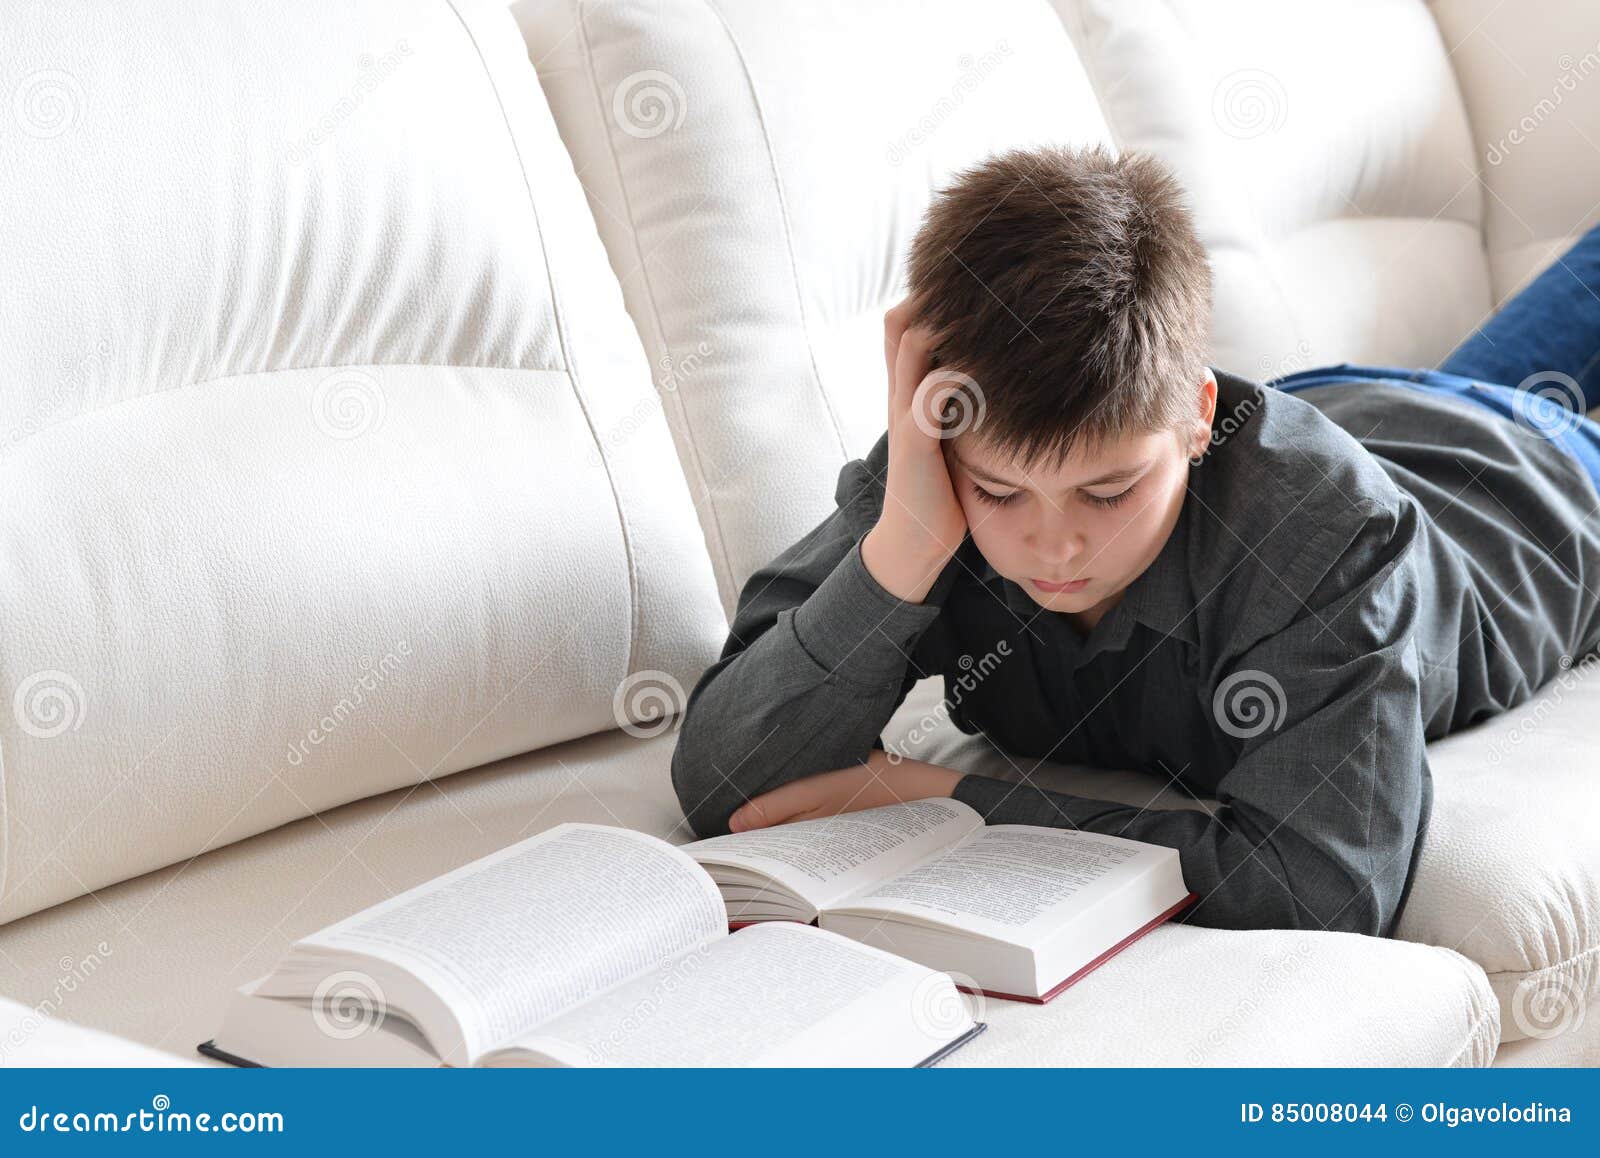 Читать лежа вредно лежа на горячем песке. Чтение лежа. Мальчик лежит с книгой. Мальчик лежит с книжкой. Мальчик с книгой на кровати.